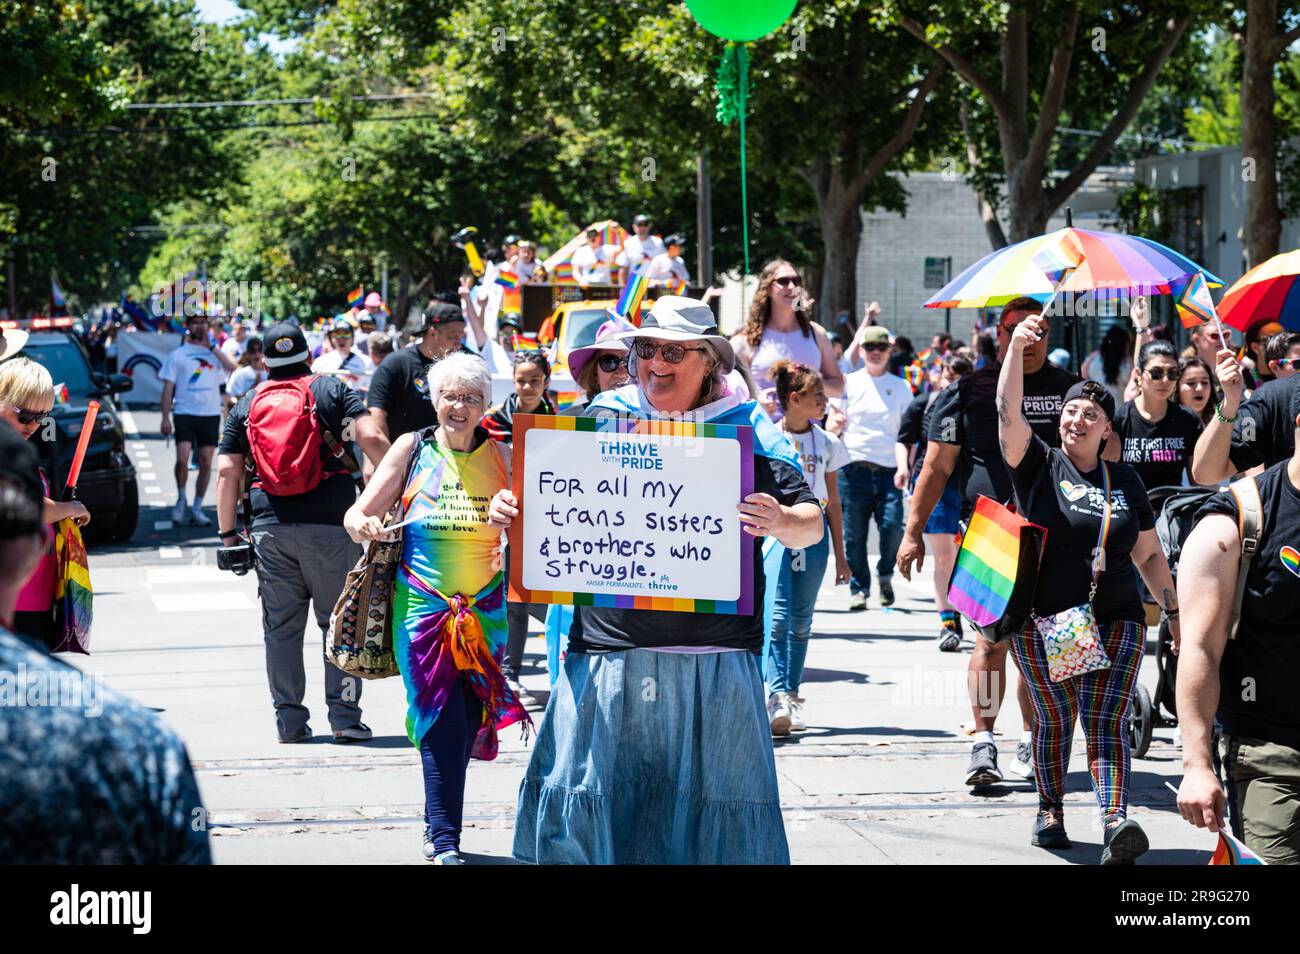 Un membre de la délégation Kaiser tient une pancarte qui dit "pour tous mes frères et sœurs trans qui luttent" à la parade annuelle de la fierté de Sacramento. Banque D'Images